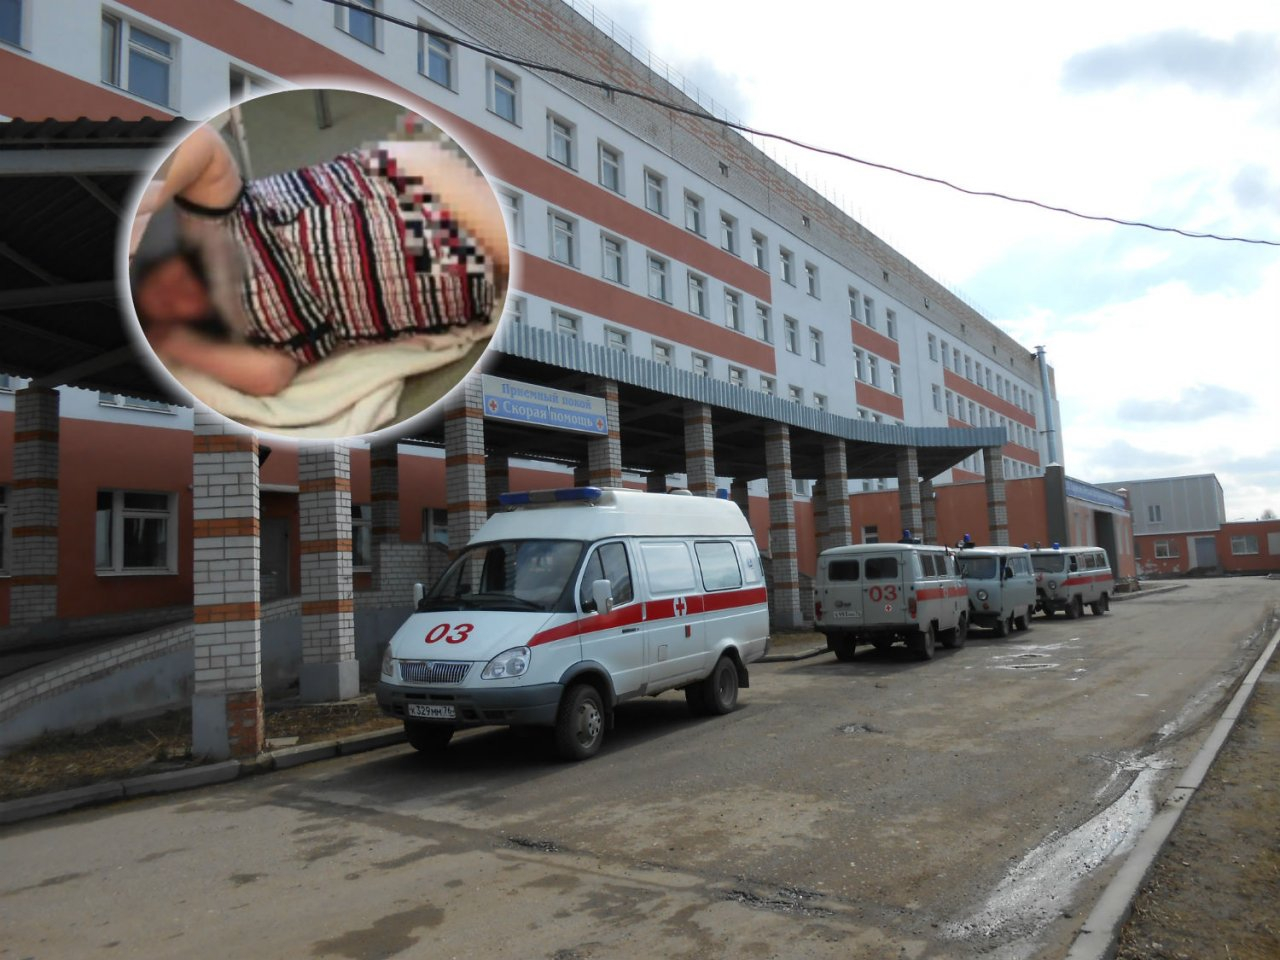 "Она тяжеленная": депздрав пролил свет на скандал с "избиением" пациентки в больнице Гаврилов - Яма